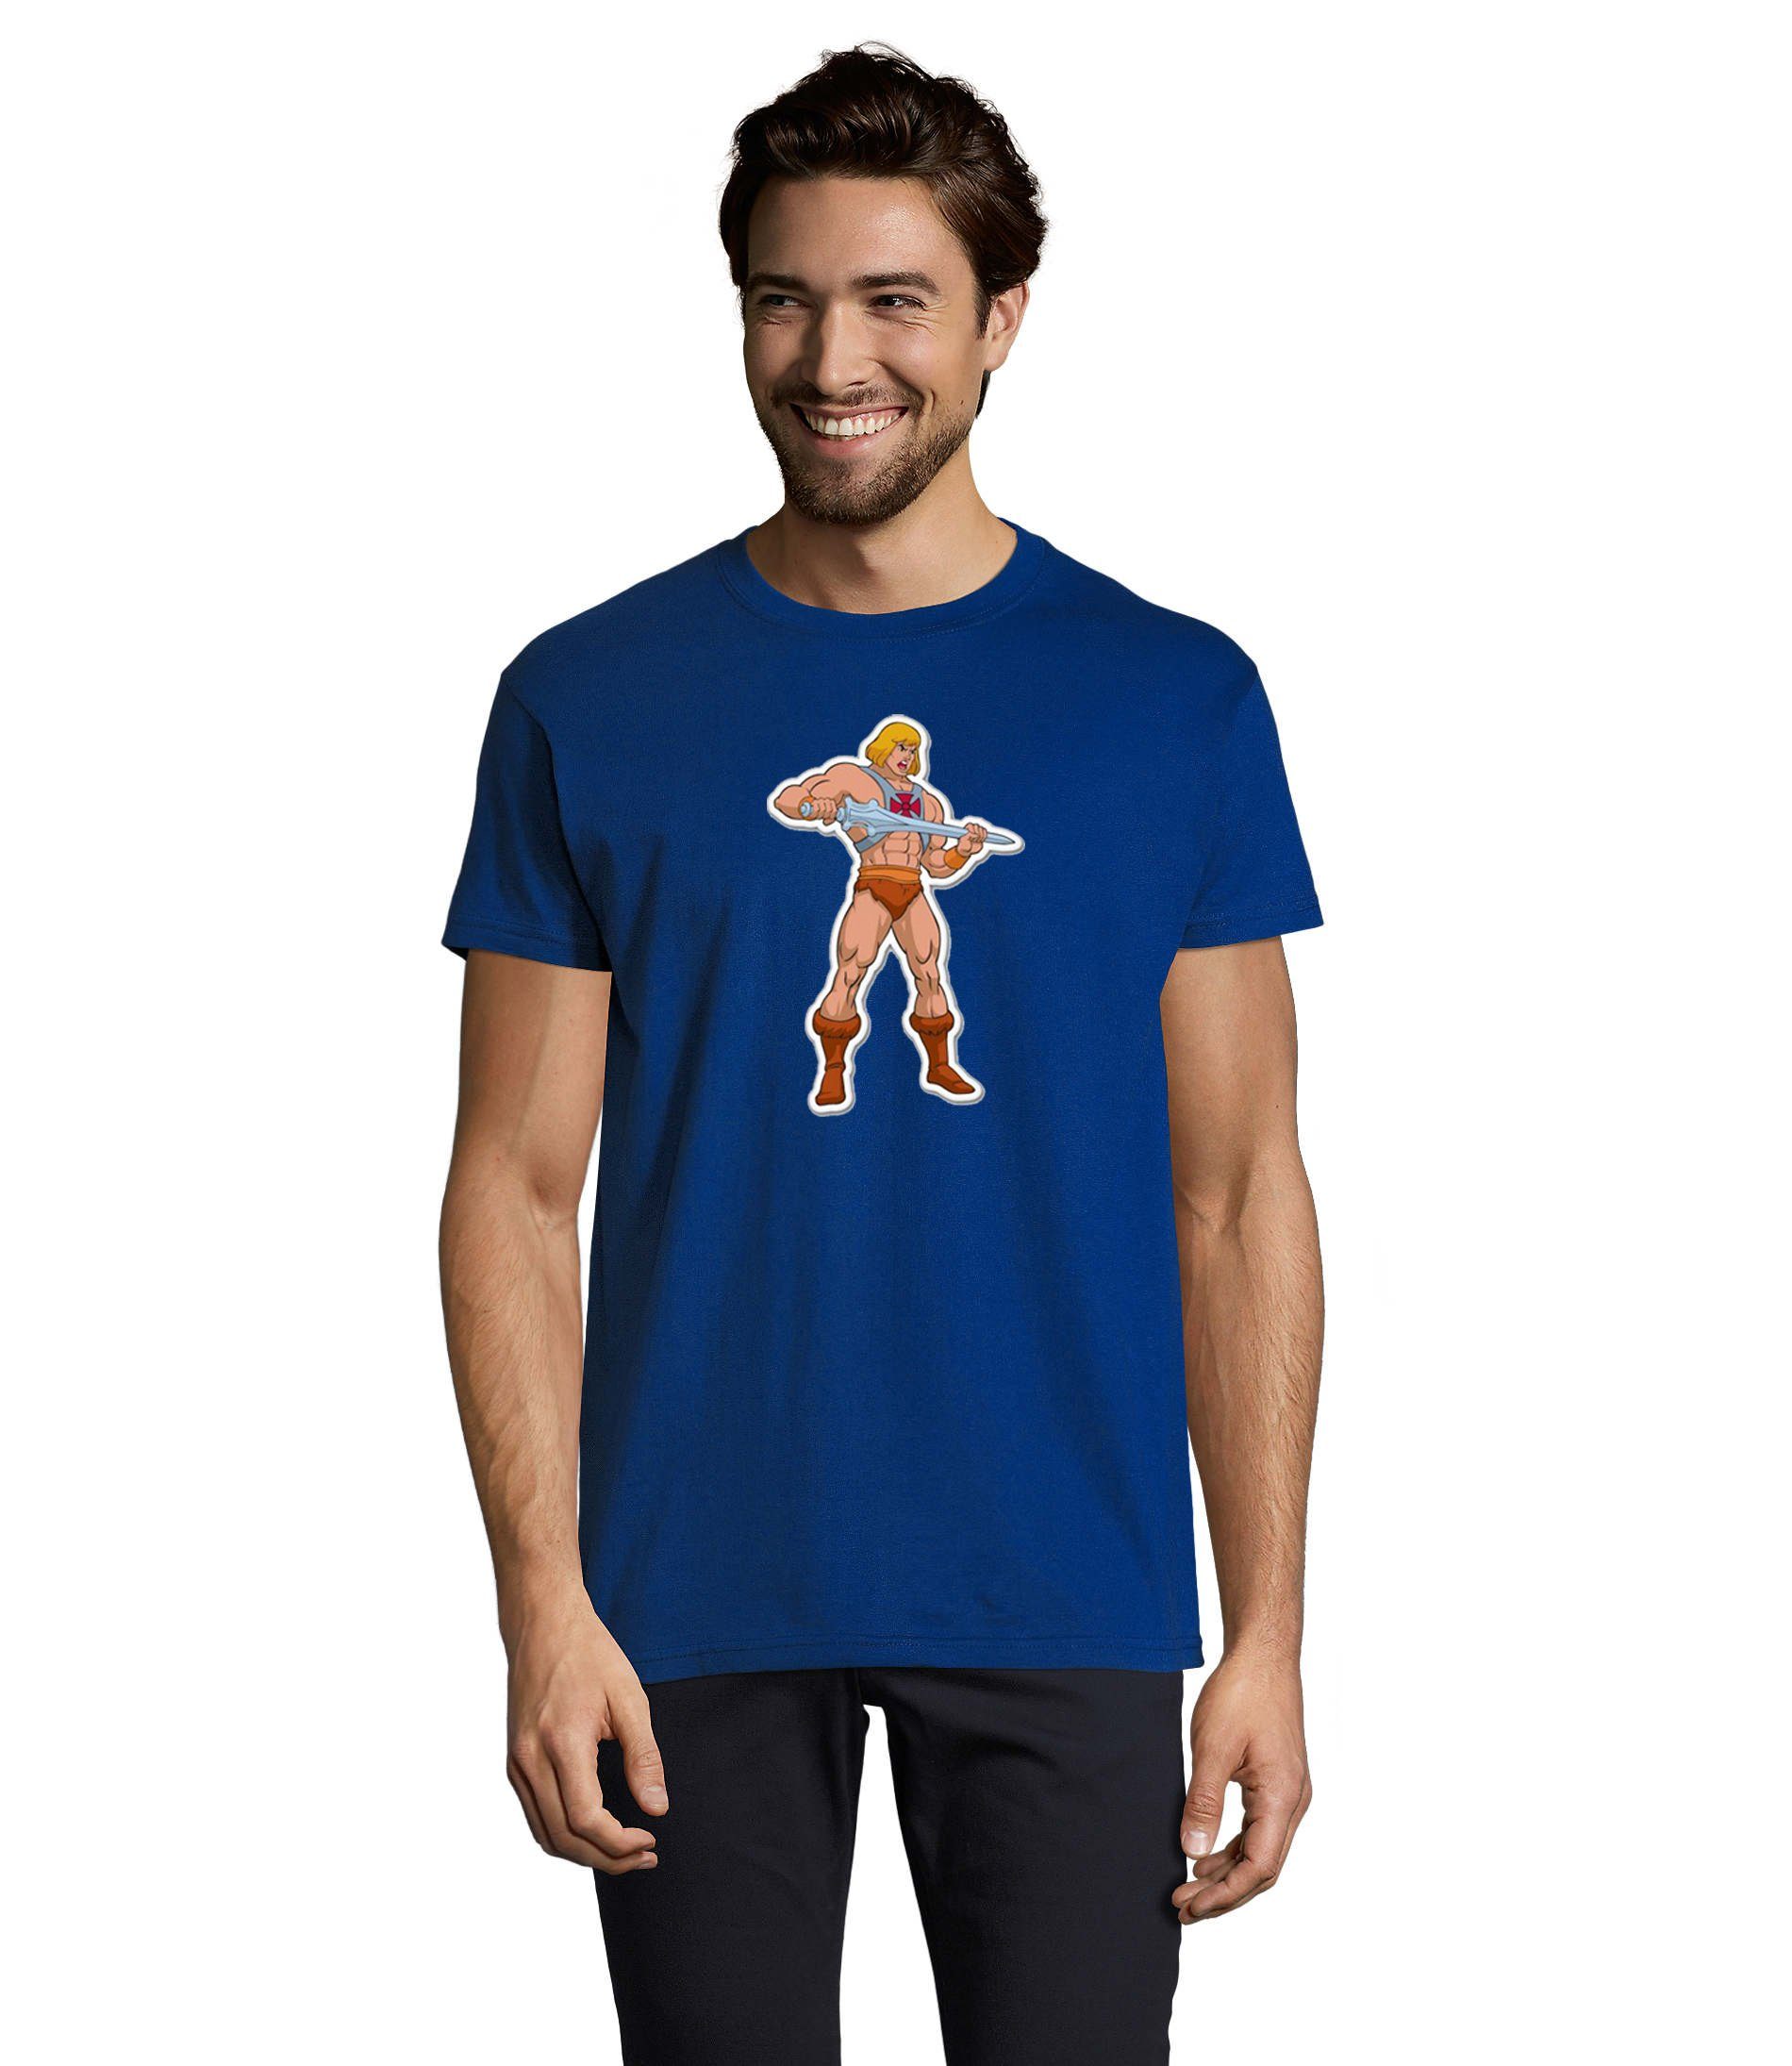 Blau The T-Shirt of Herren & Universe Masters He-Man Brownie MotU Blondie